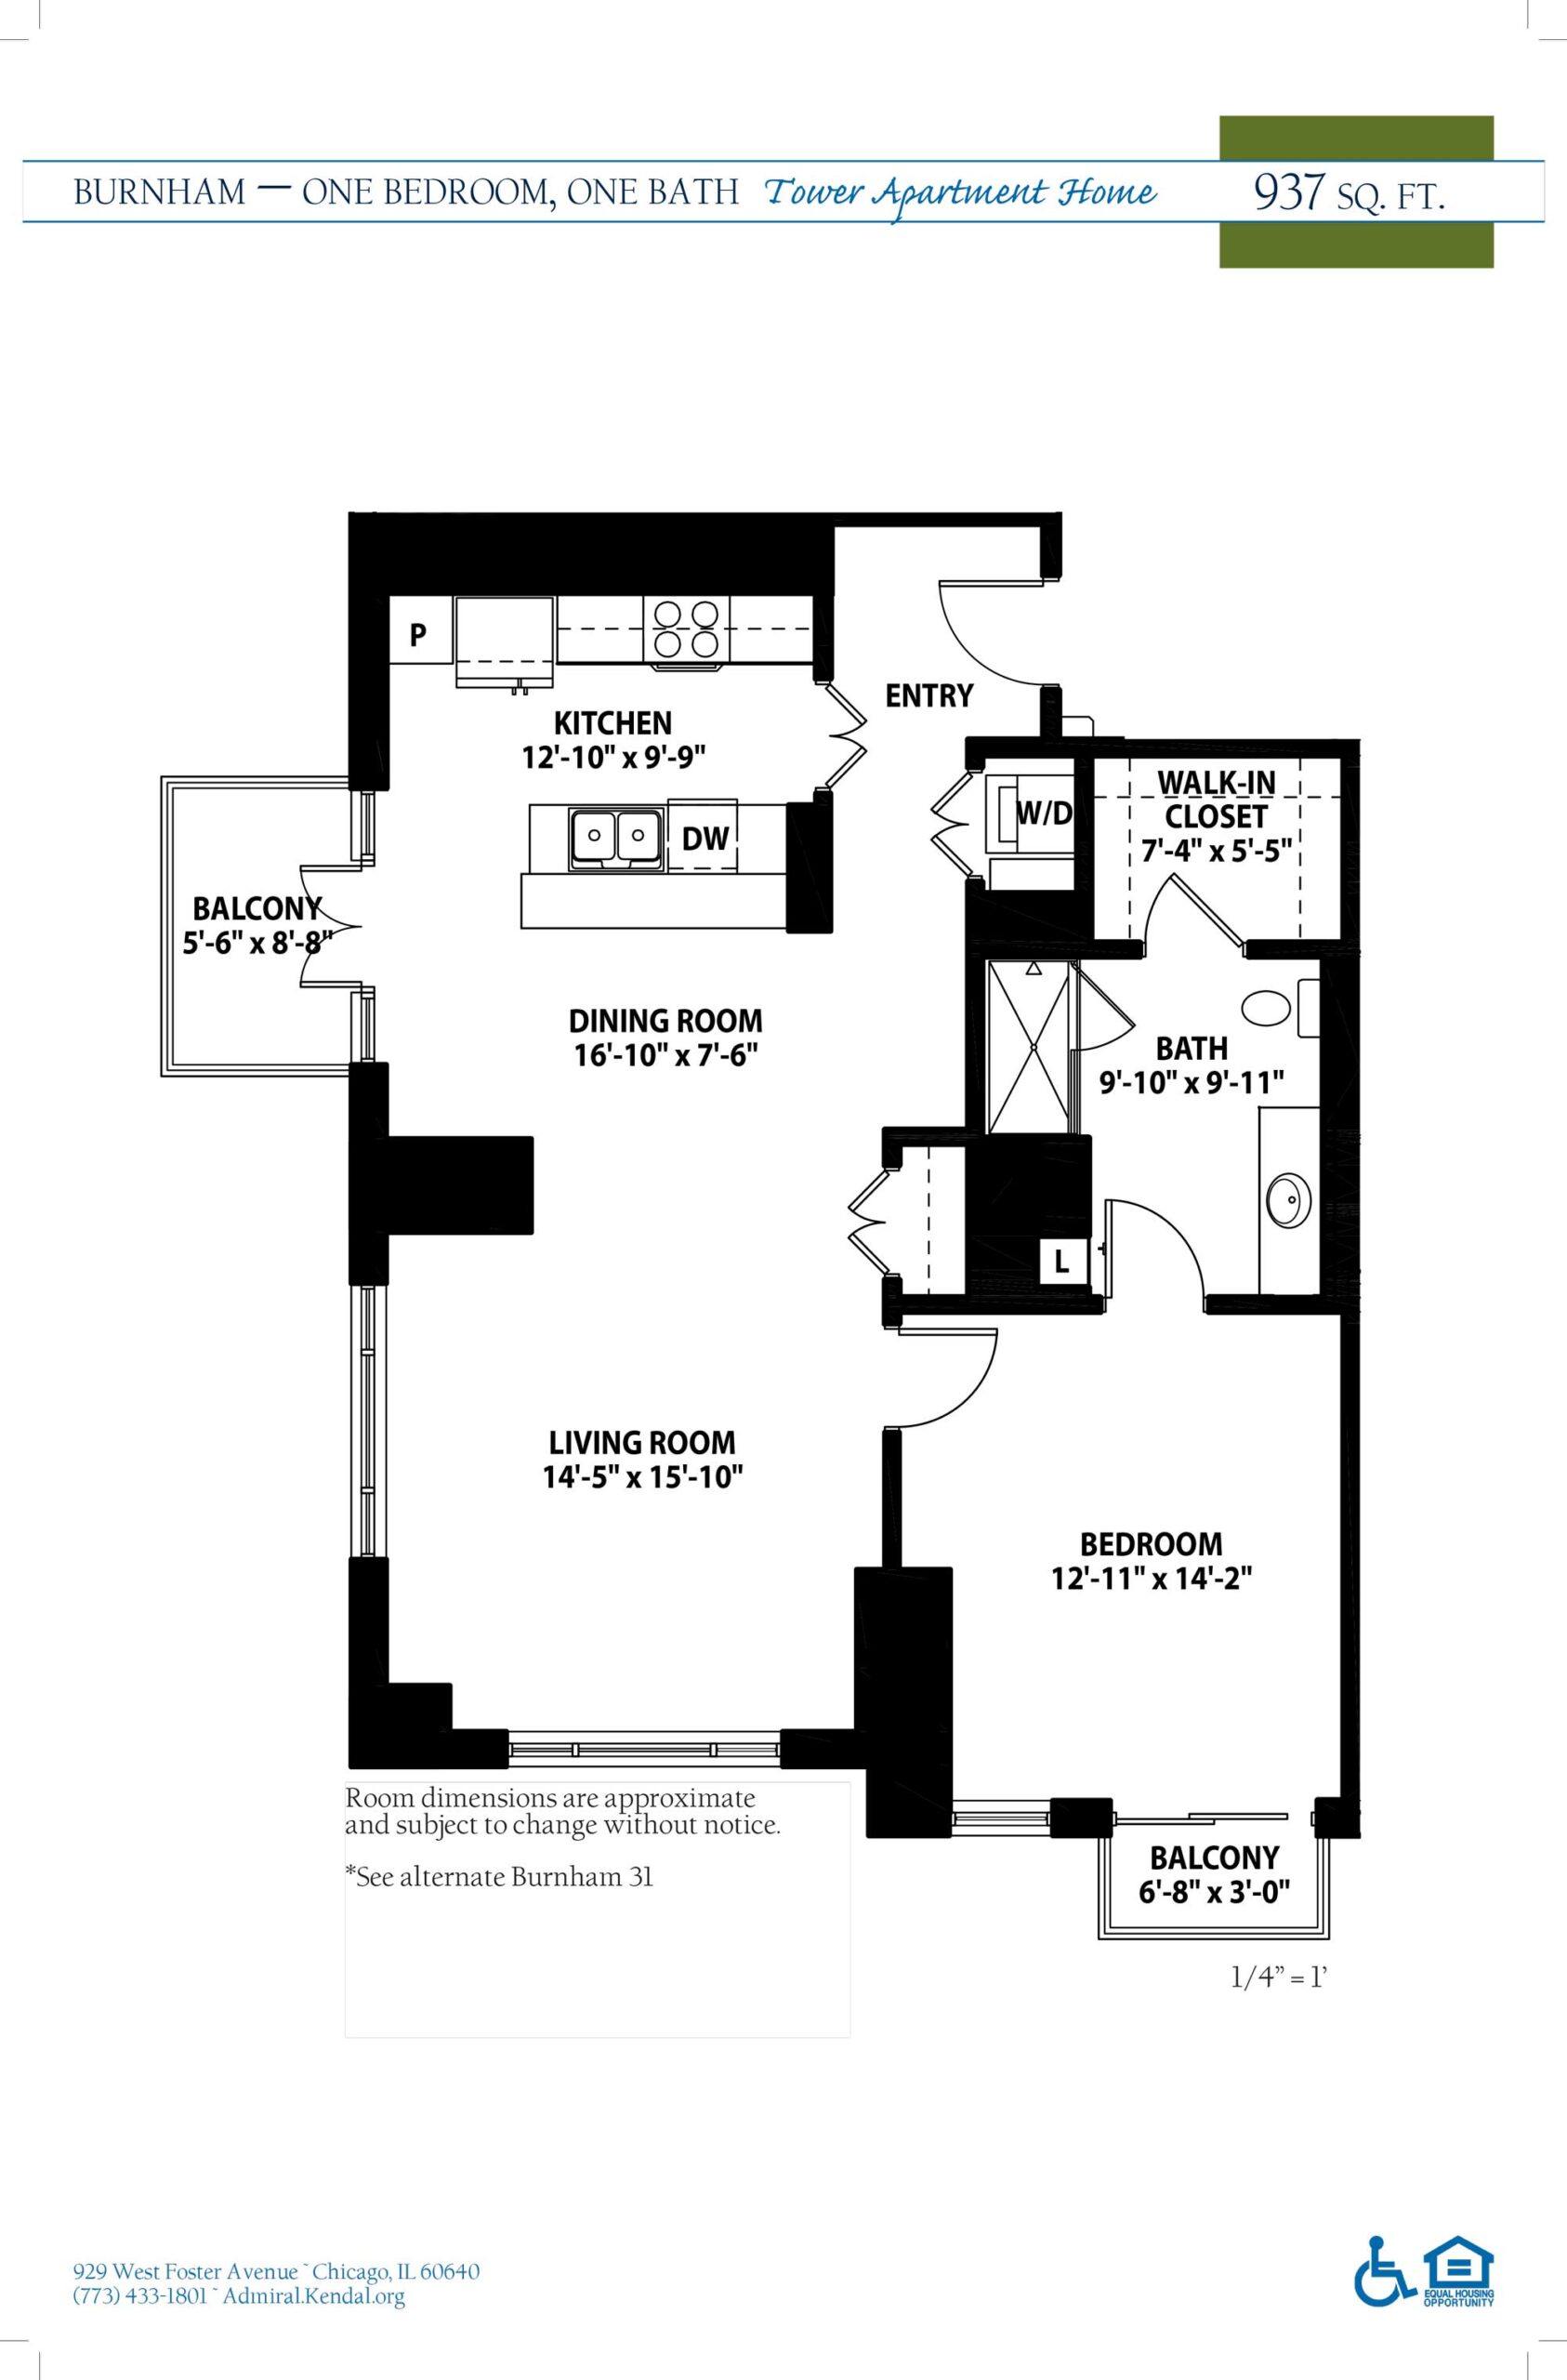 The Burnham apartment floor plan